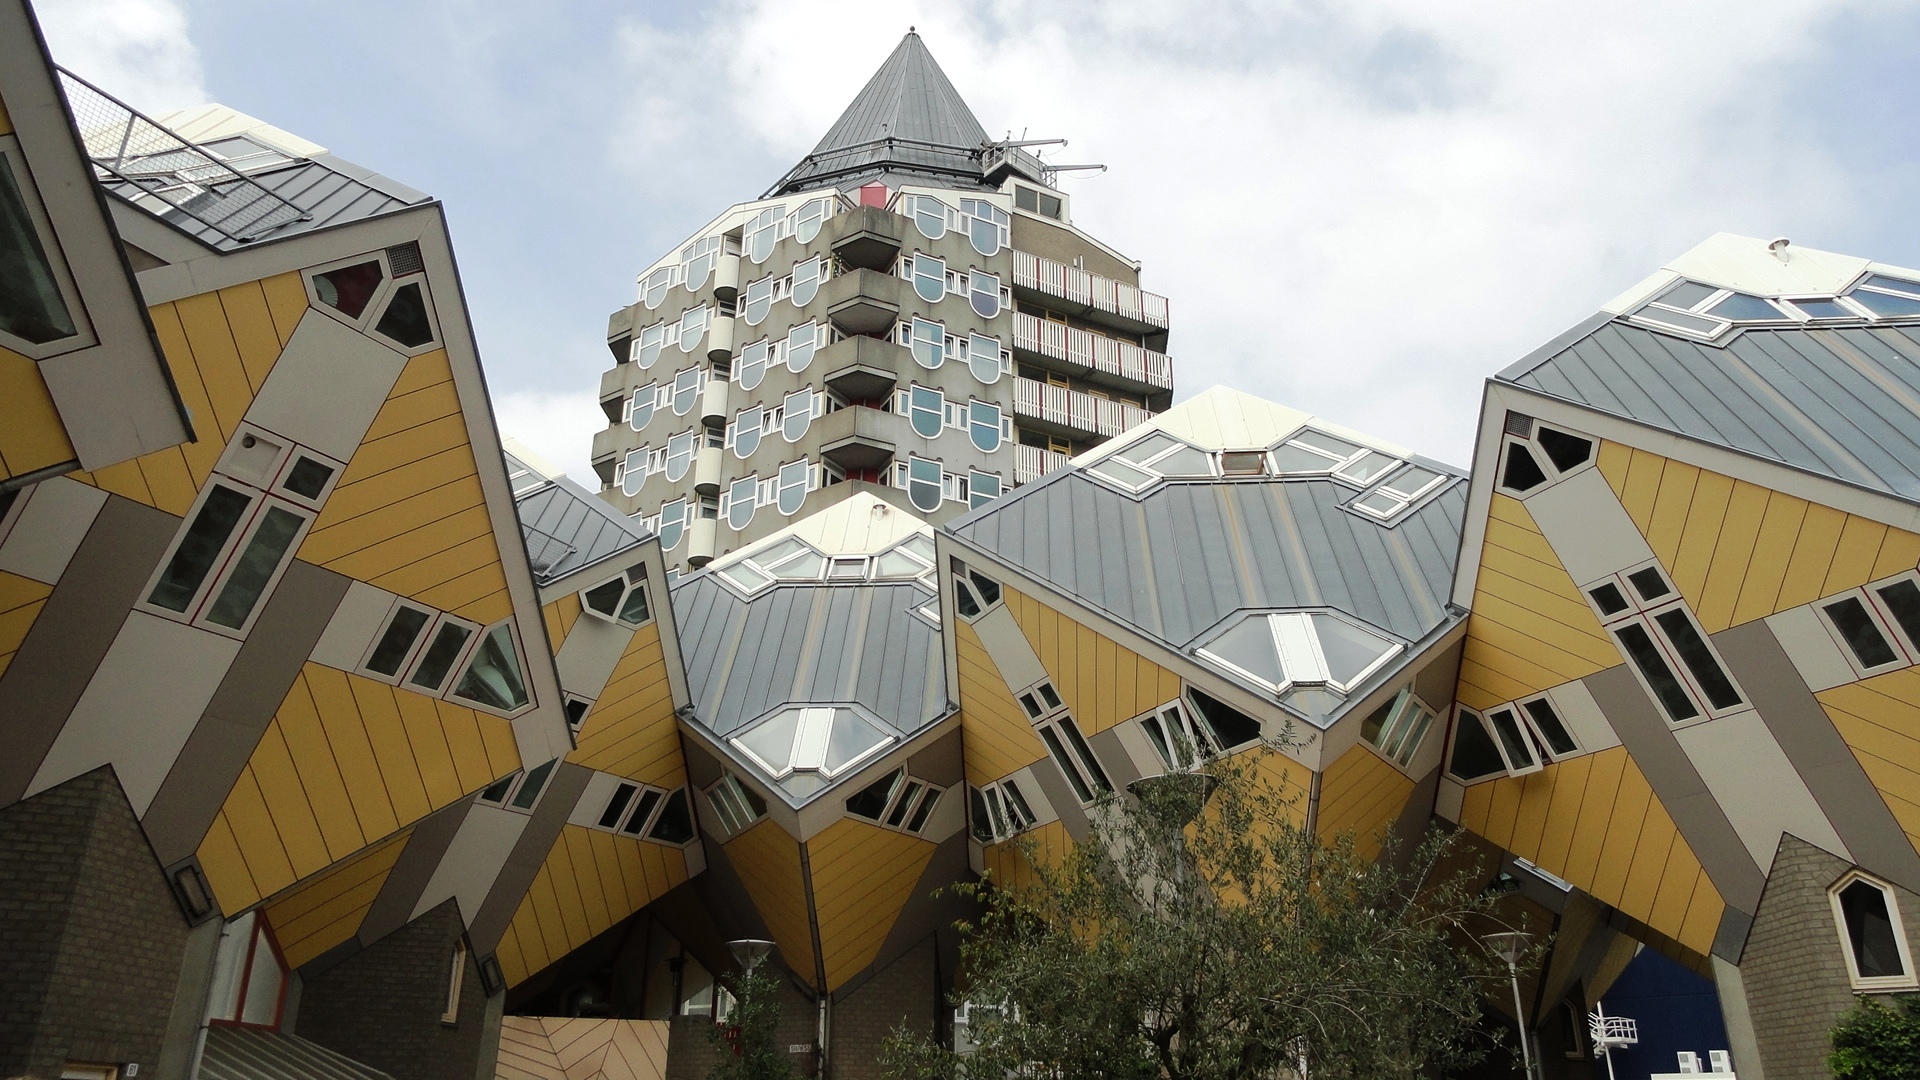 Rotterdam - Les Maisons cubes de Piet Blom